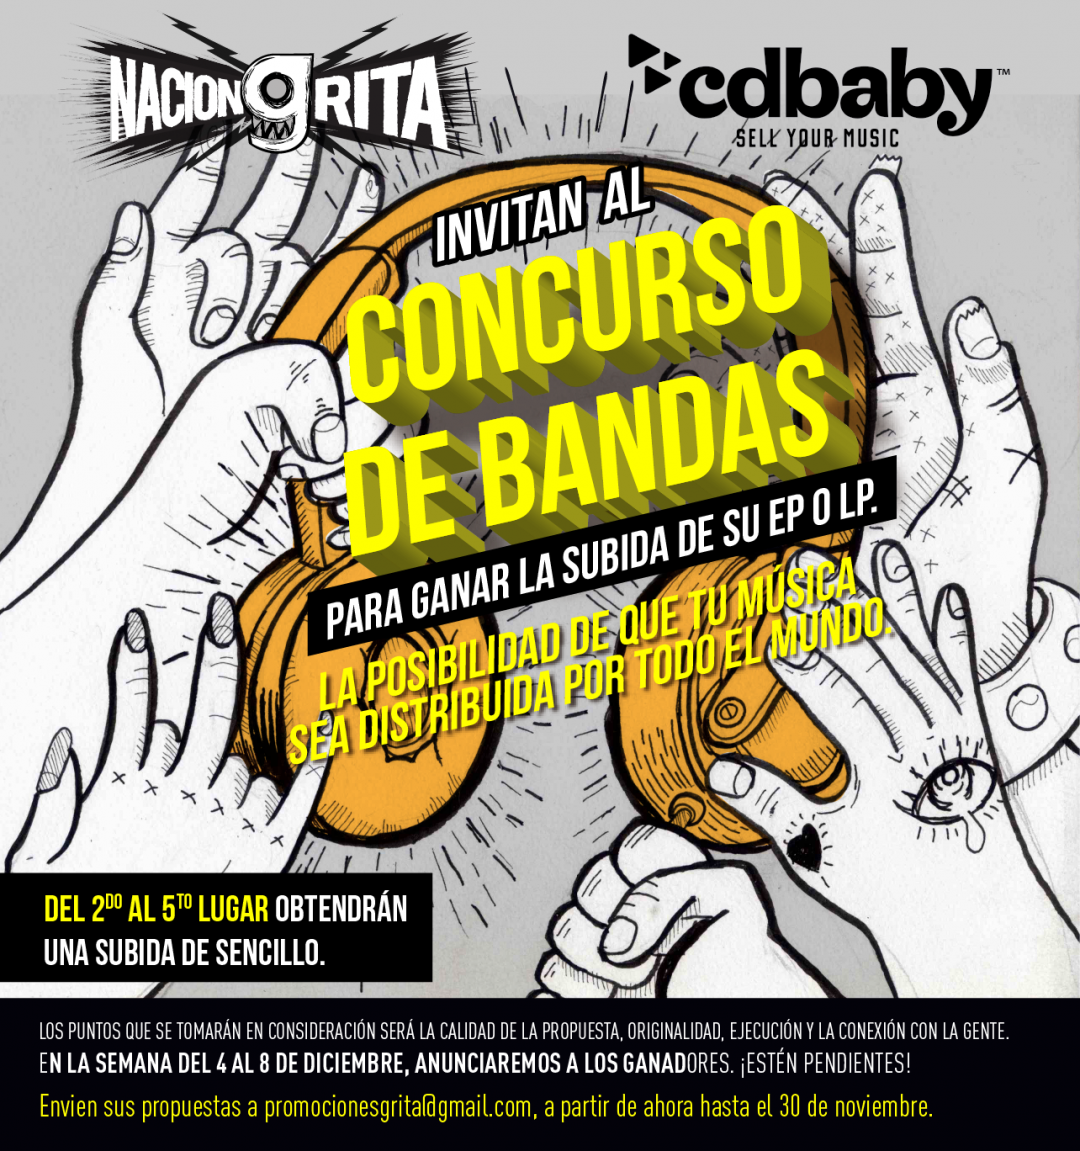 Nación Grita y Cdbaby, ¡invitan al "Concurso de Bandas"!